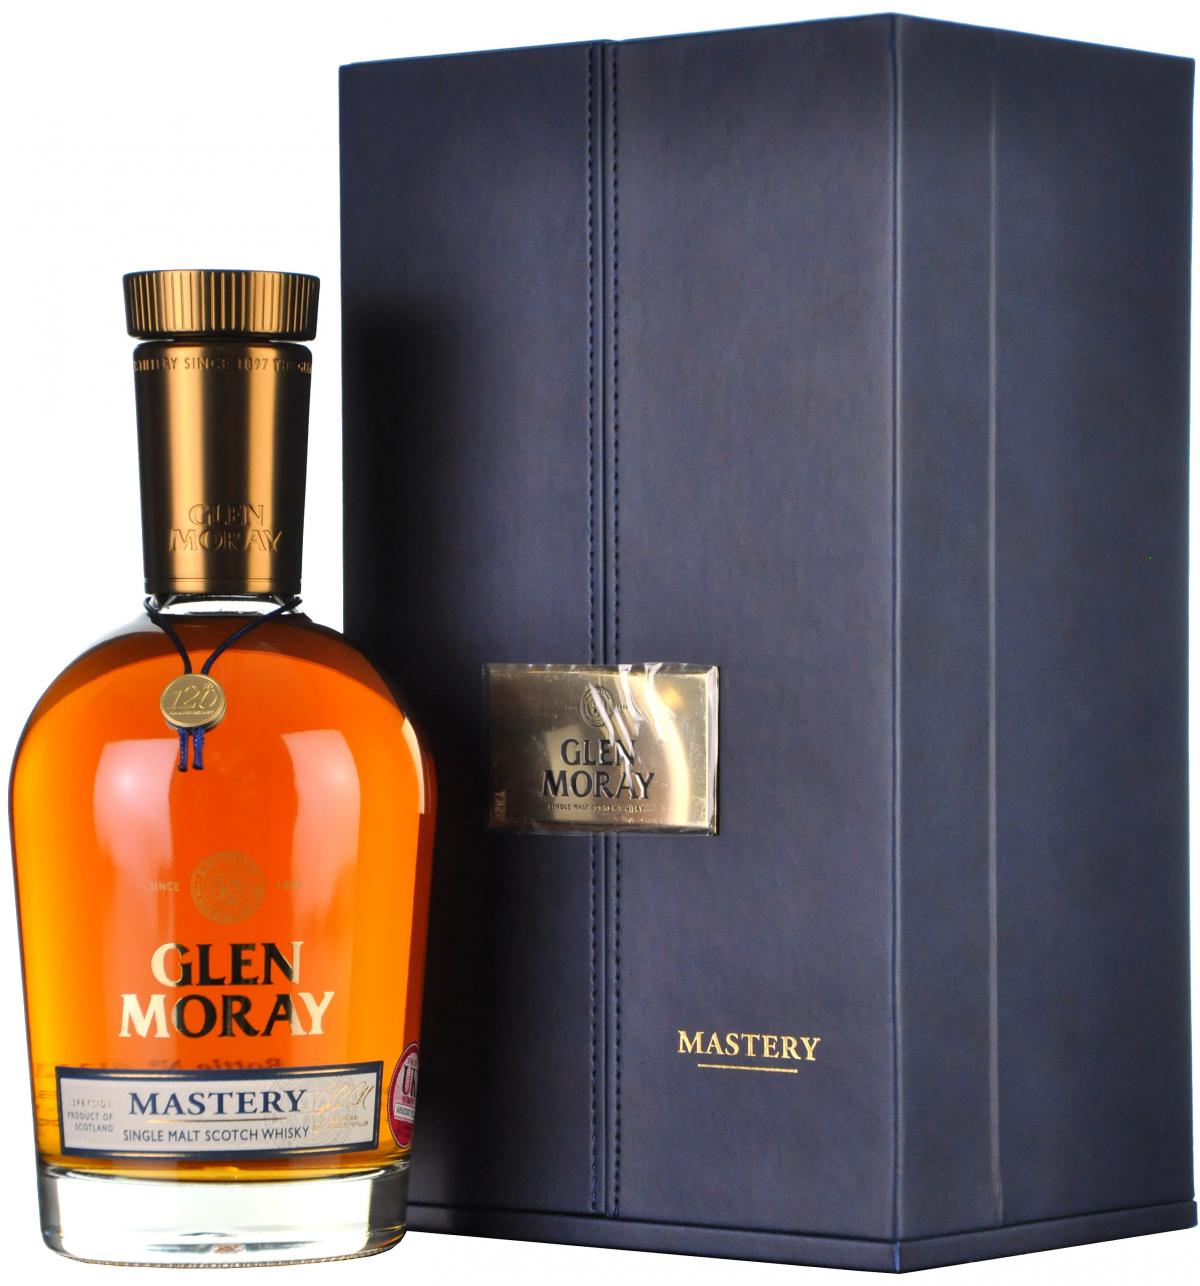 Glen Moray Mastery 120th Anniversary